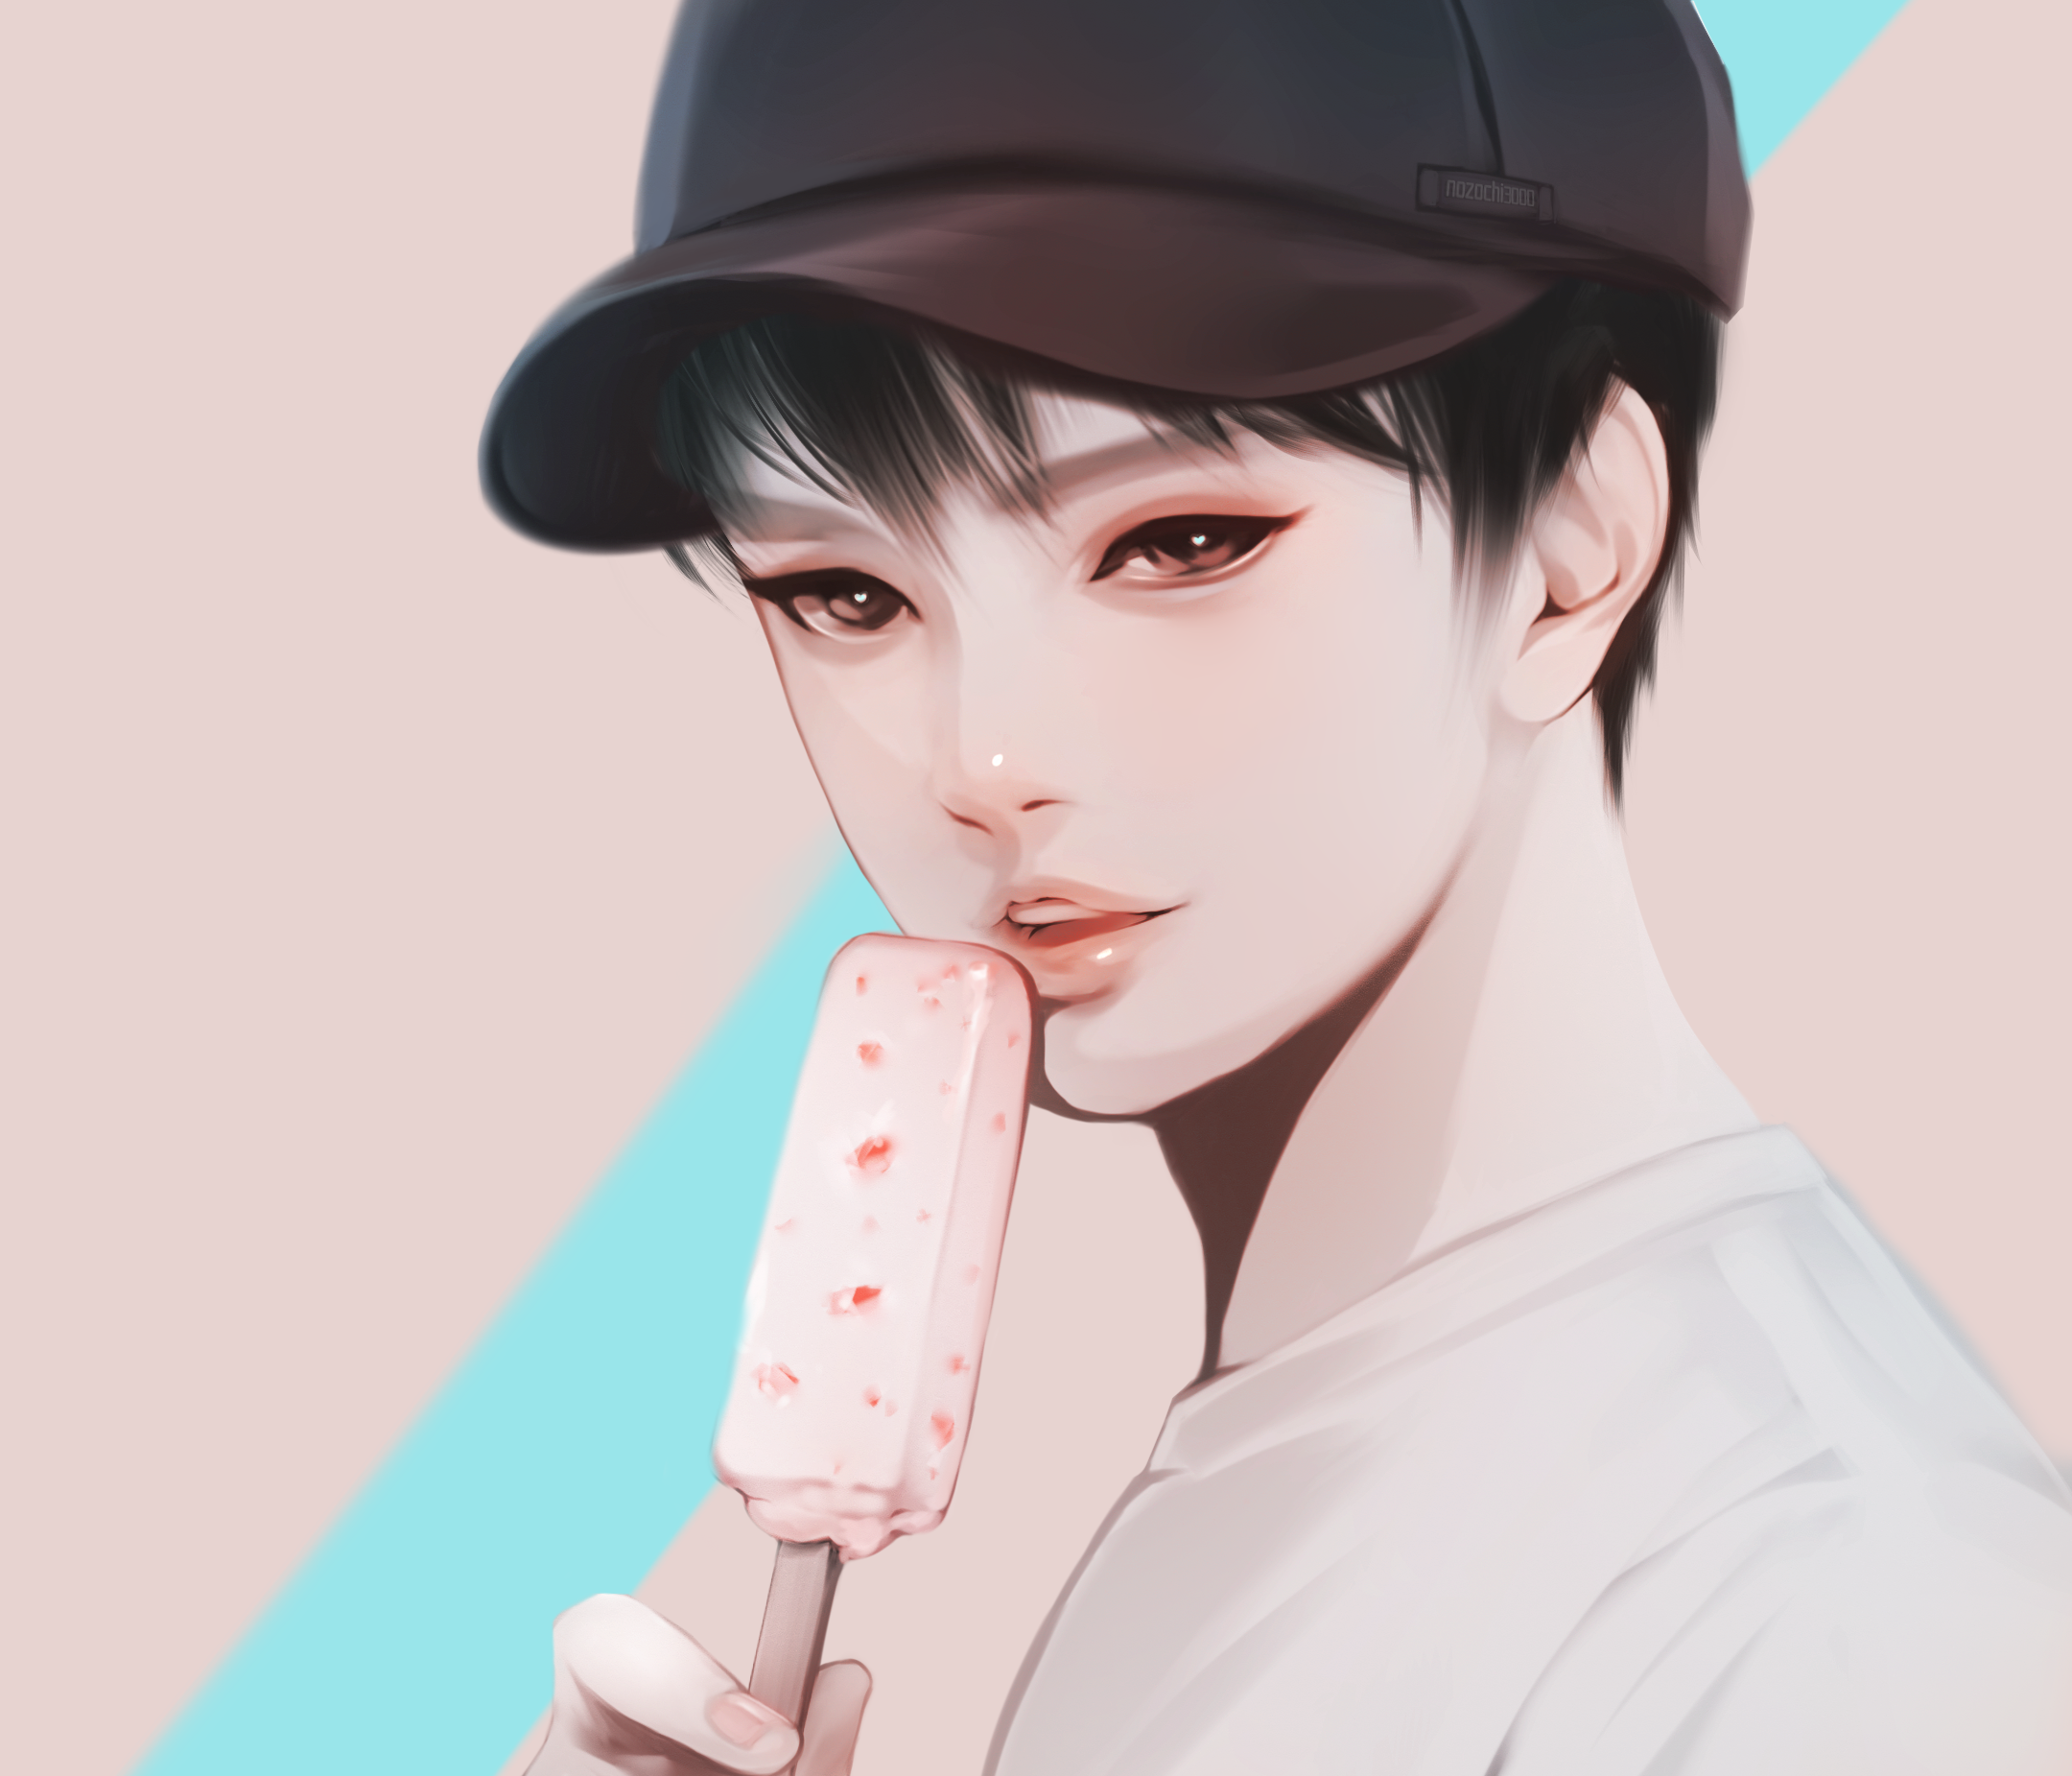 アイスを食べる少年